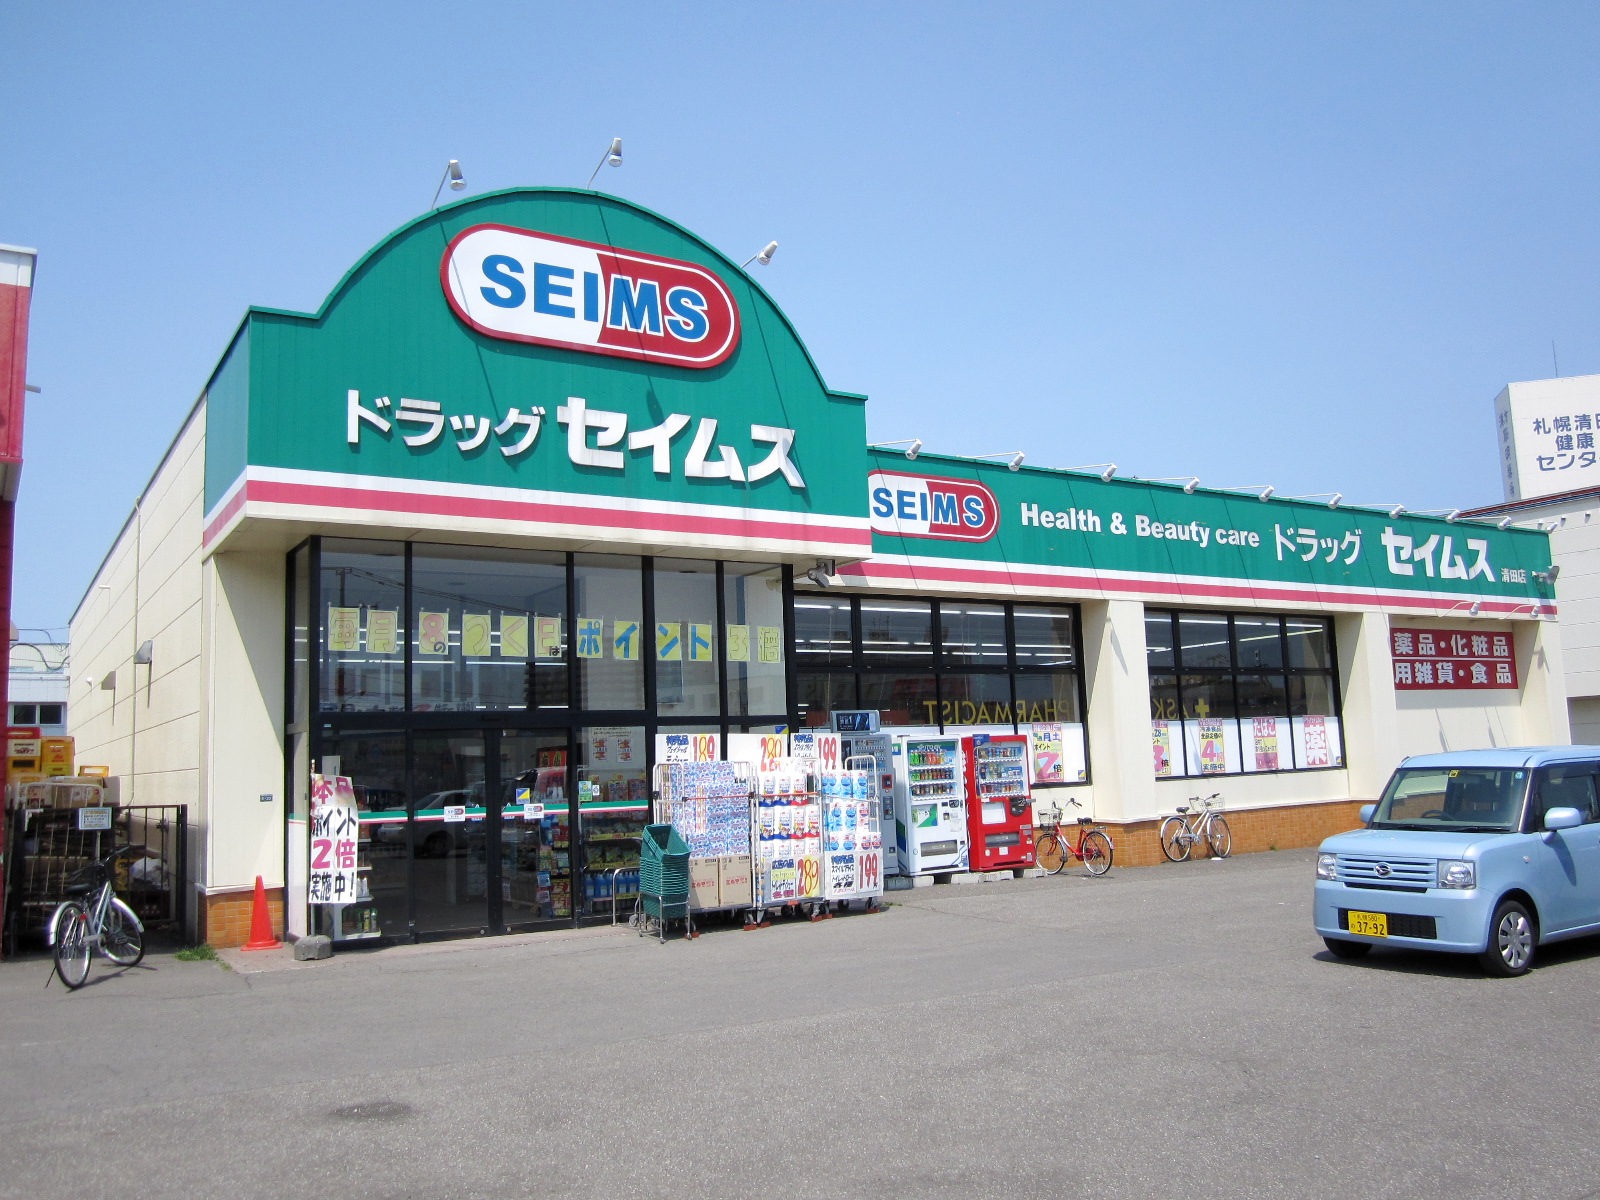 Dorakkusutoa. Drag Seimusu Kiyota store 834m to (drugstore)